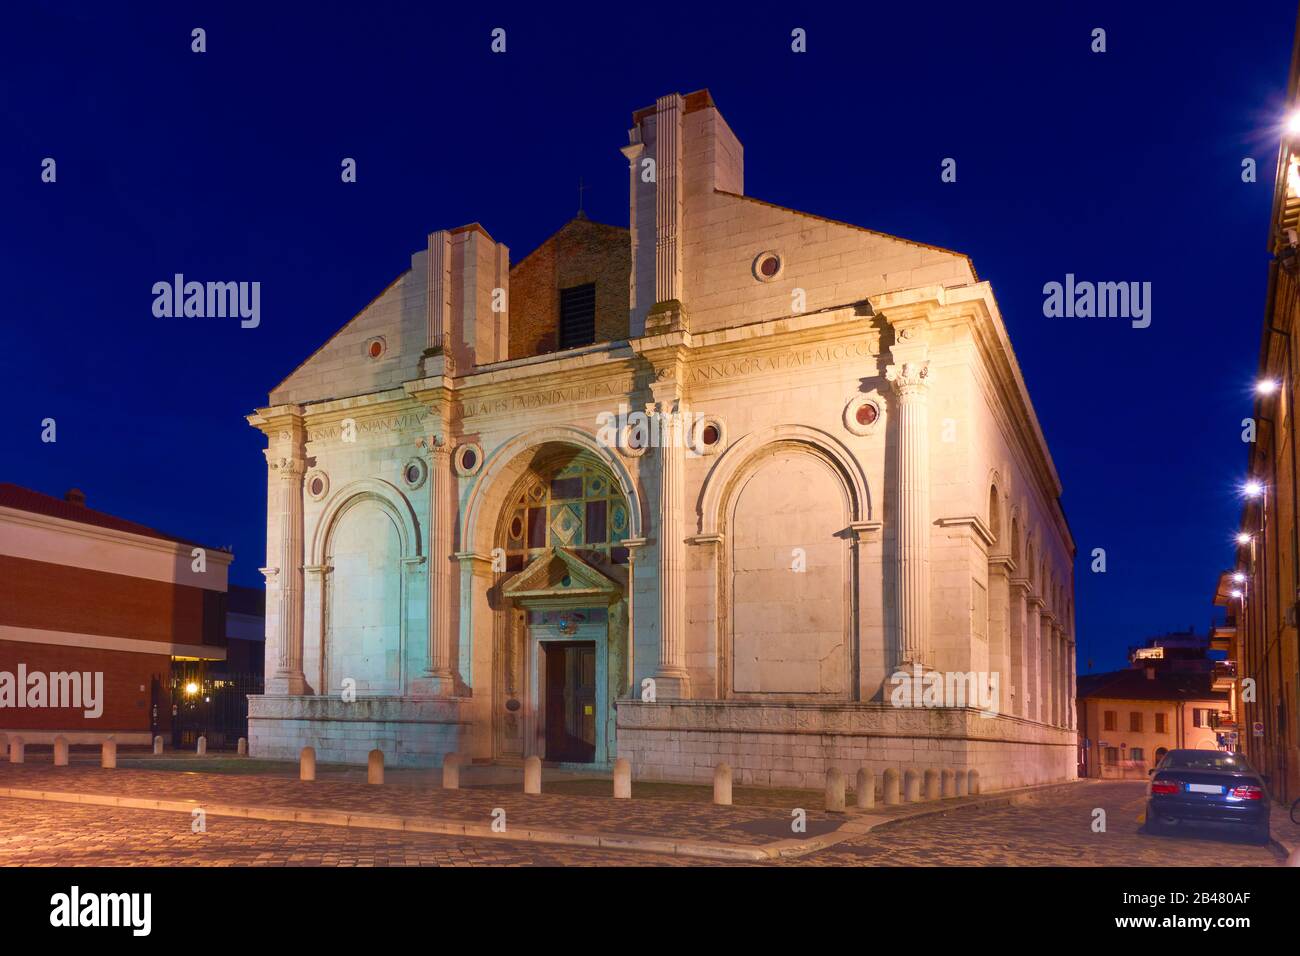 El Tempio Malatestiano (Templo Malatesta) - Iglesia catedral de Rimini por la noche, Italia Foto de stock